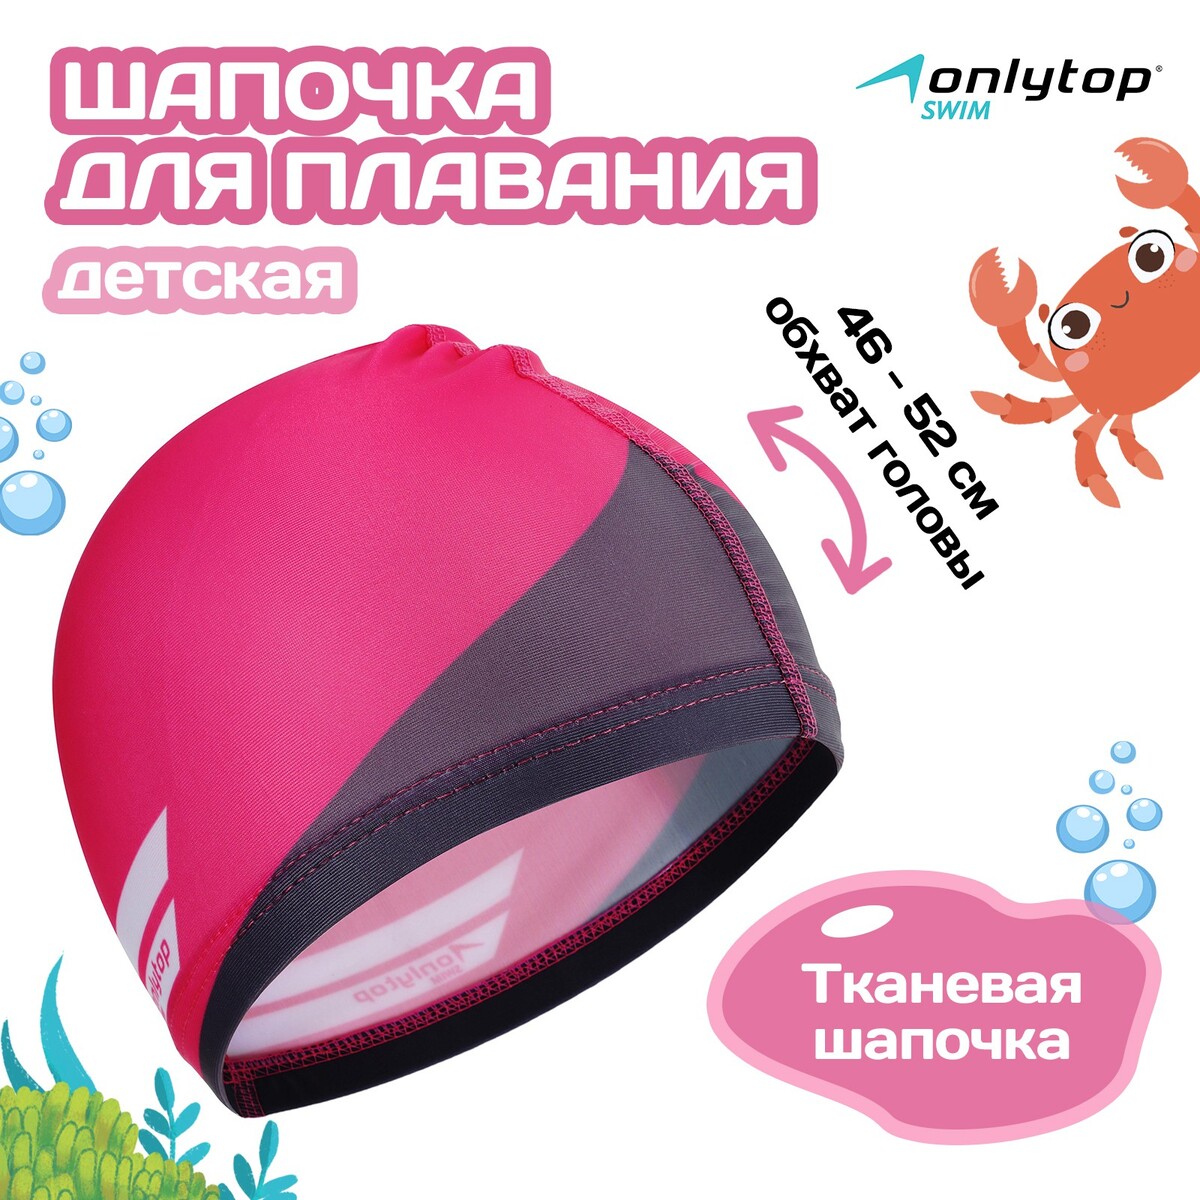 Шапочка для плавания детская onlitop swim, тканевая, обхват 46-52 см шапочка для плавания atemi pu 130 тканевая с полиуретановым покрытием розовый 3d